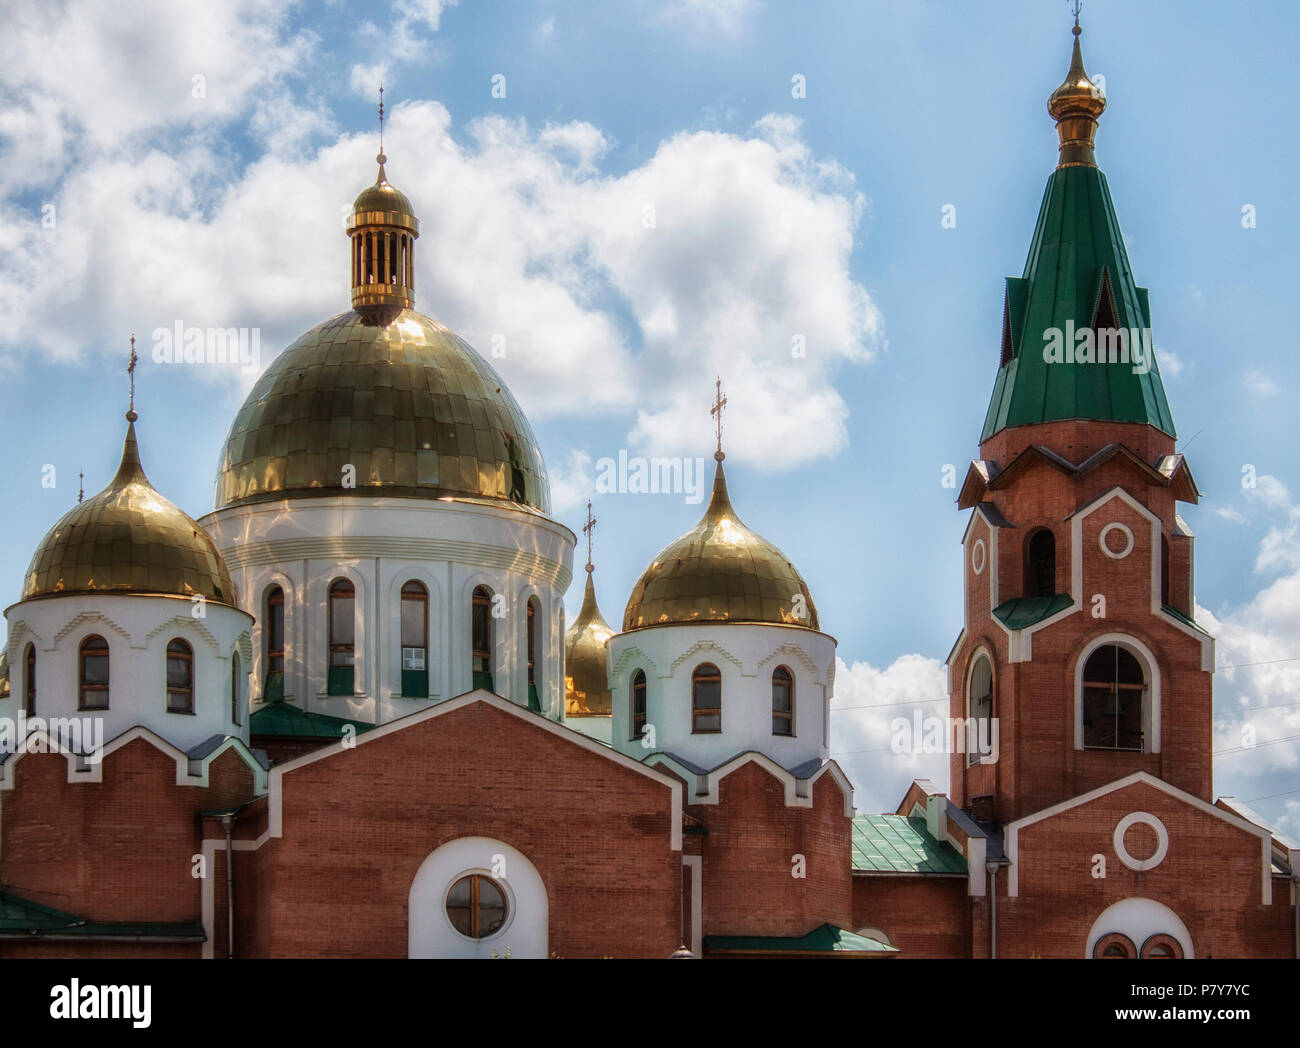 Fragment von St. Andrew's Cathedral in Ust-Kamenogorsk. Religiöse Architektur. Stockfoto